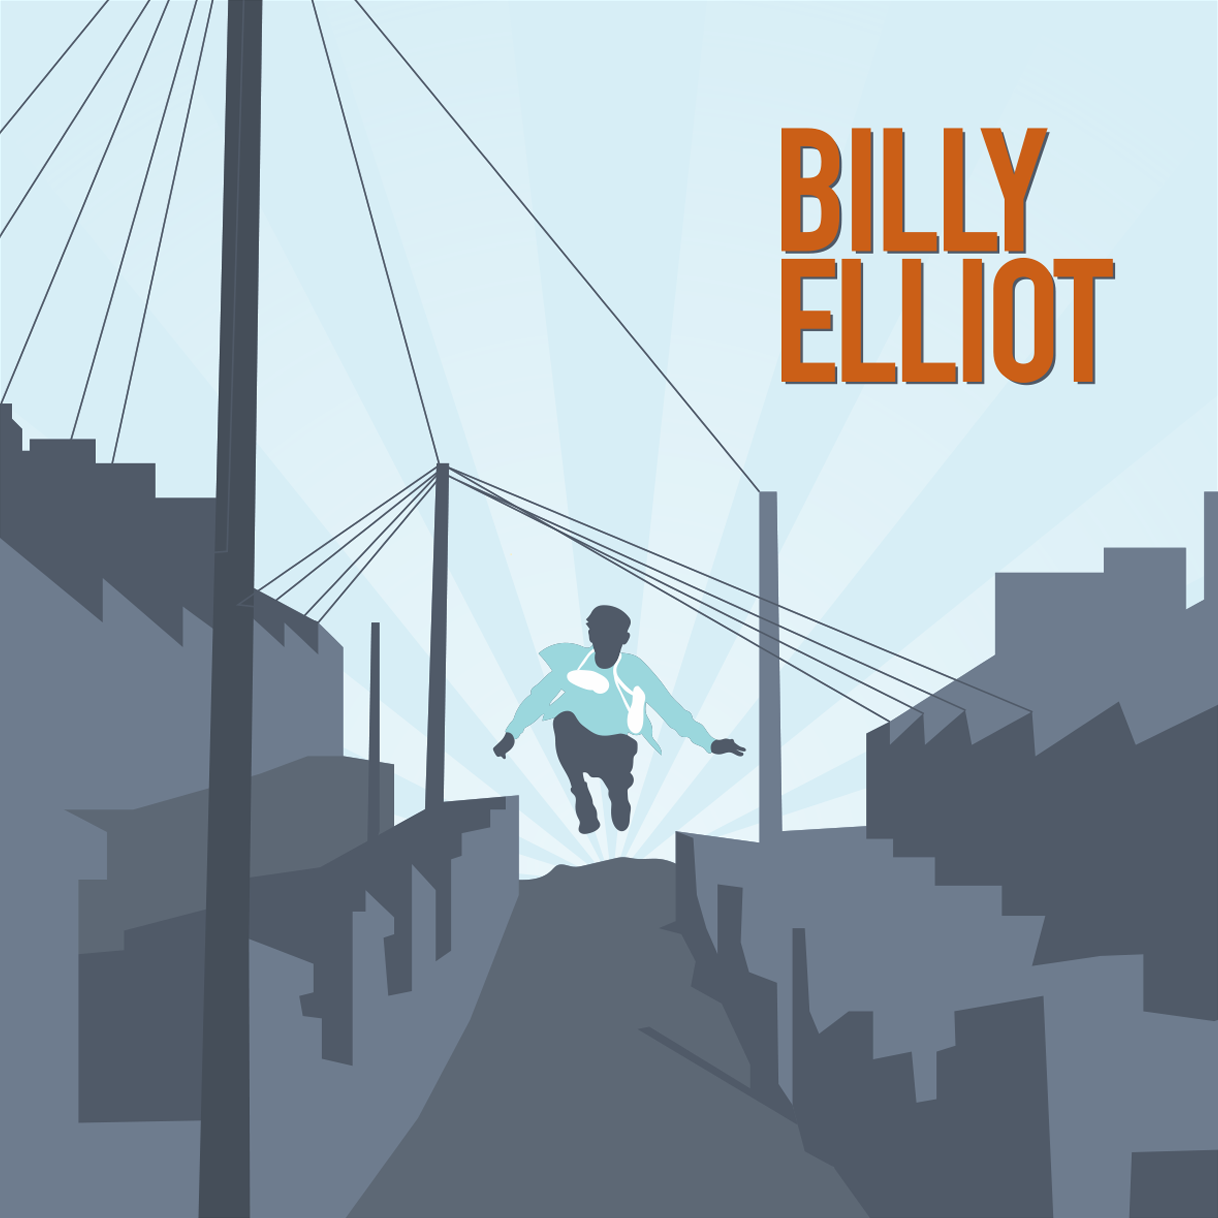 Illustration for Sony Entertainment - Billy Elliot